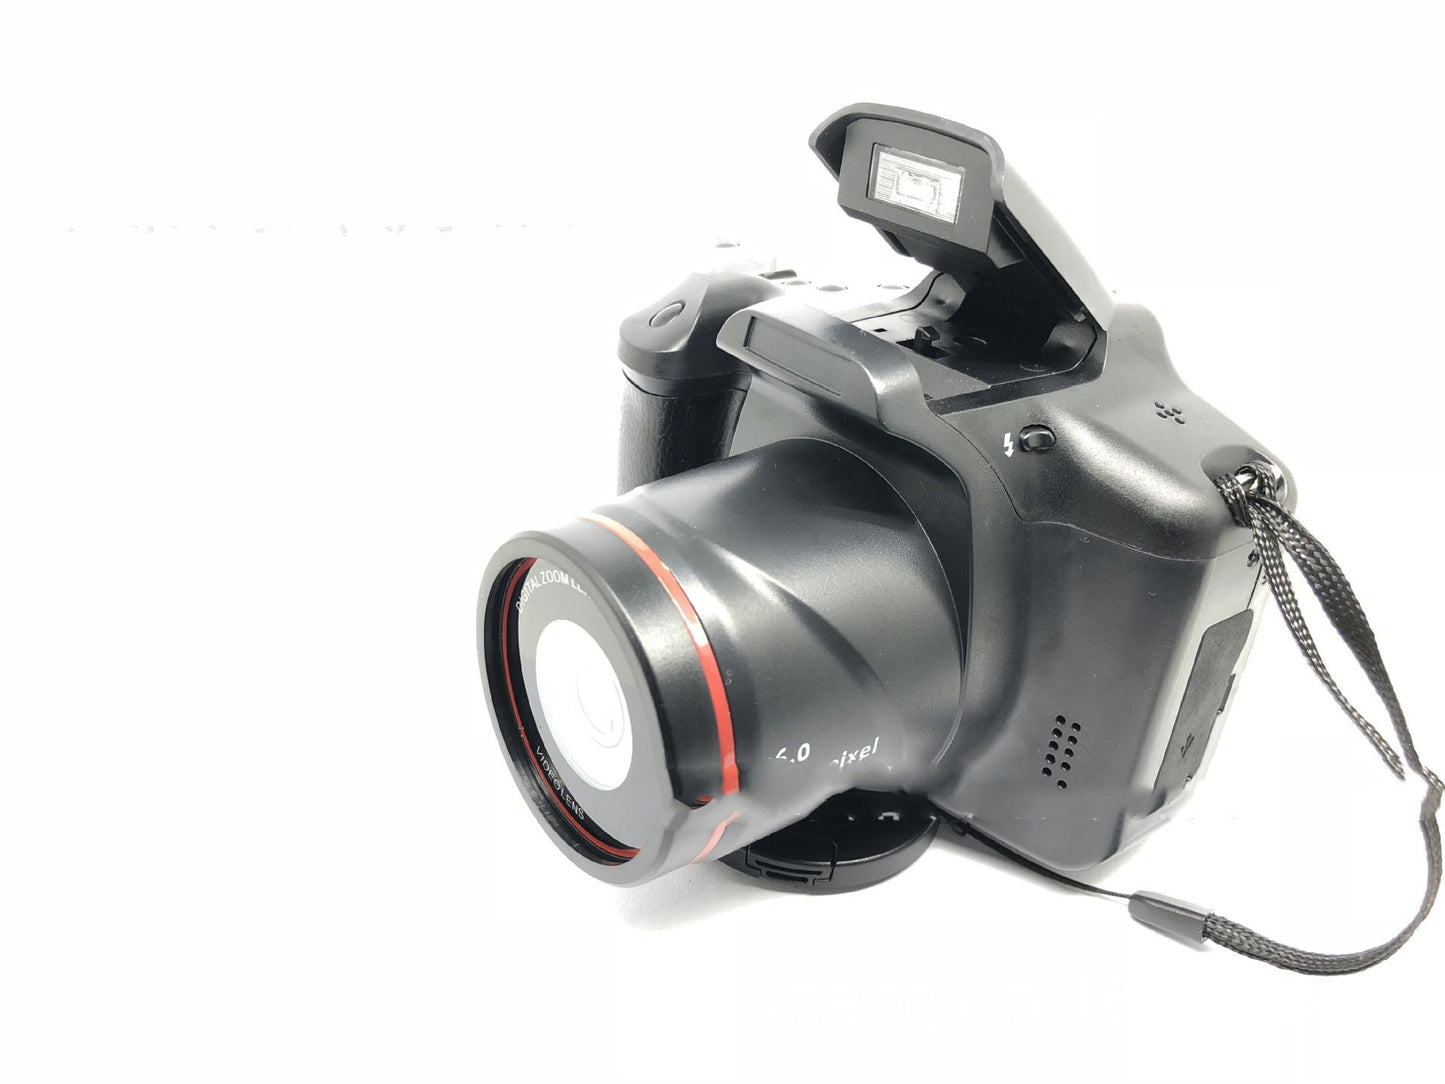 XJ05 Digital Video Camera